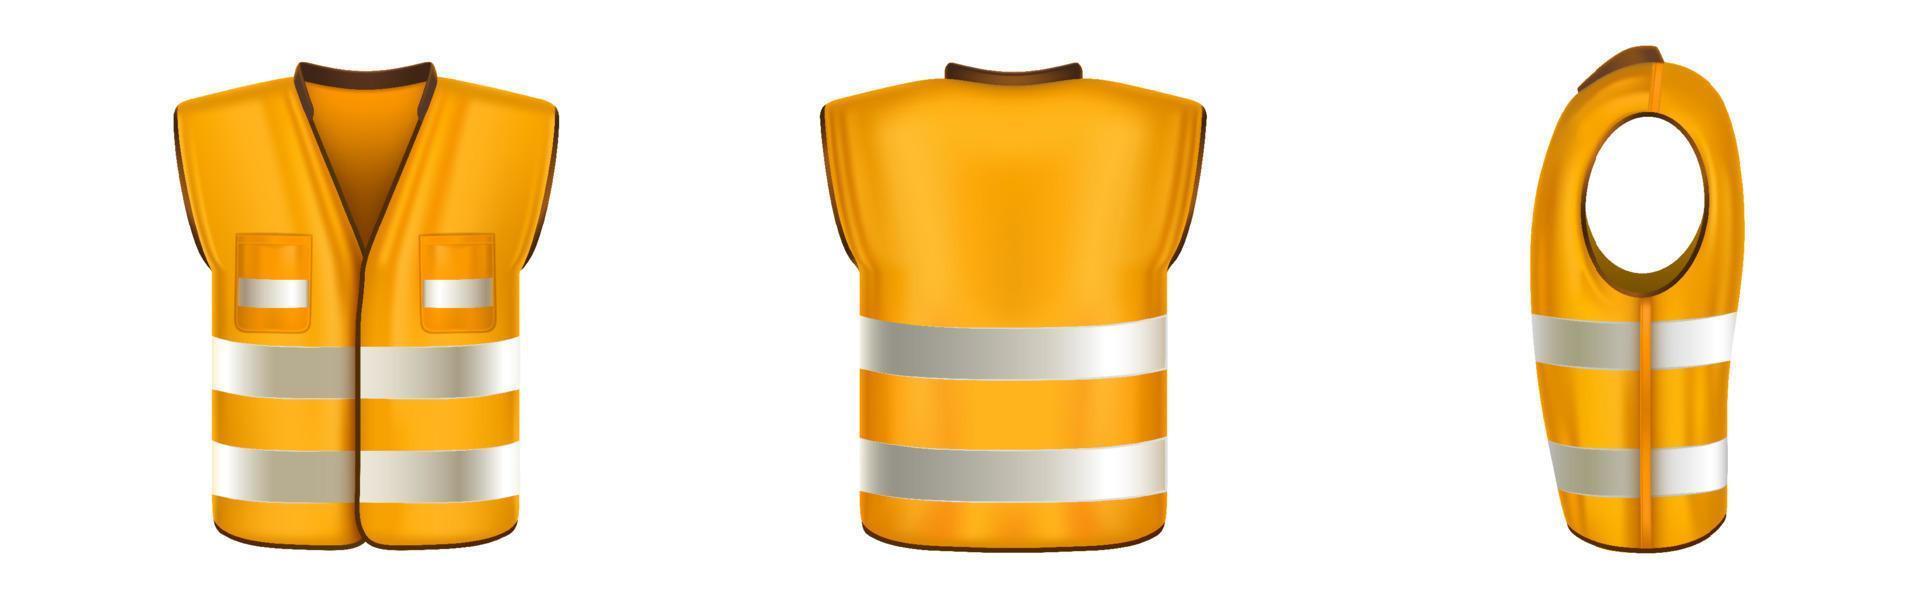 colete de segurança laranja com faixas refletoras vetor